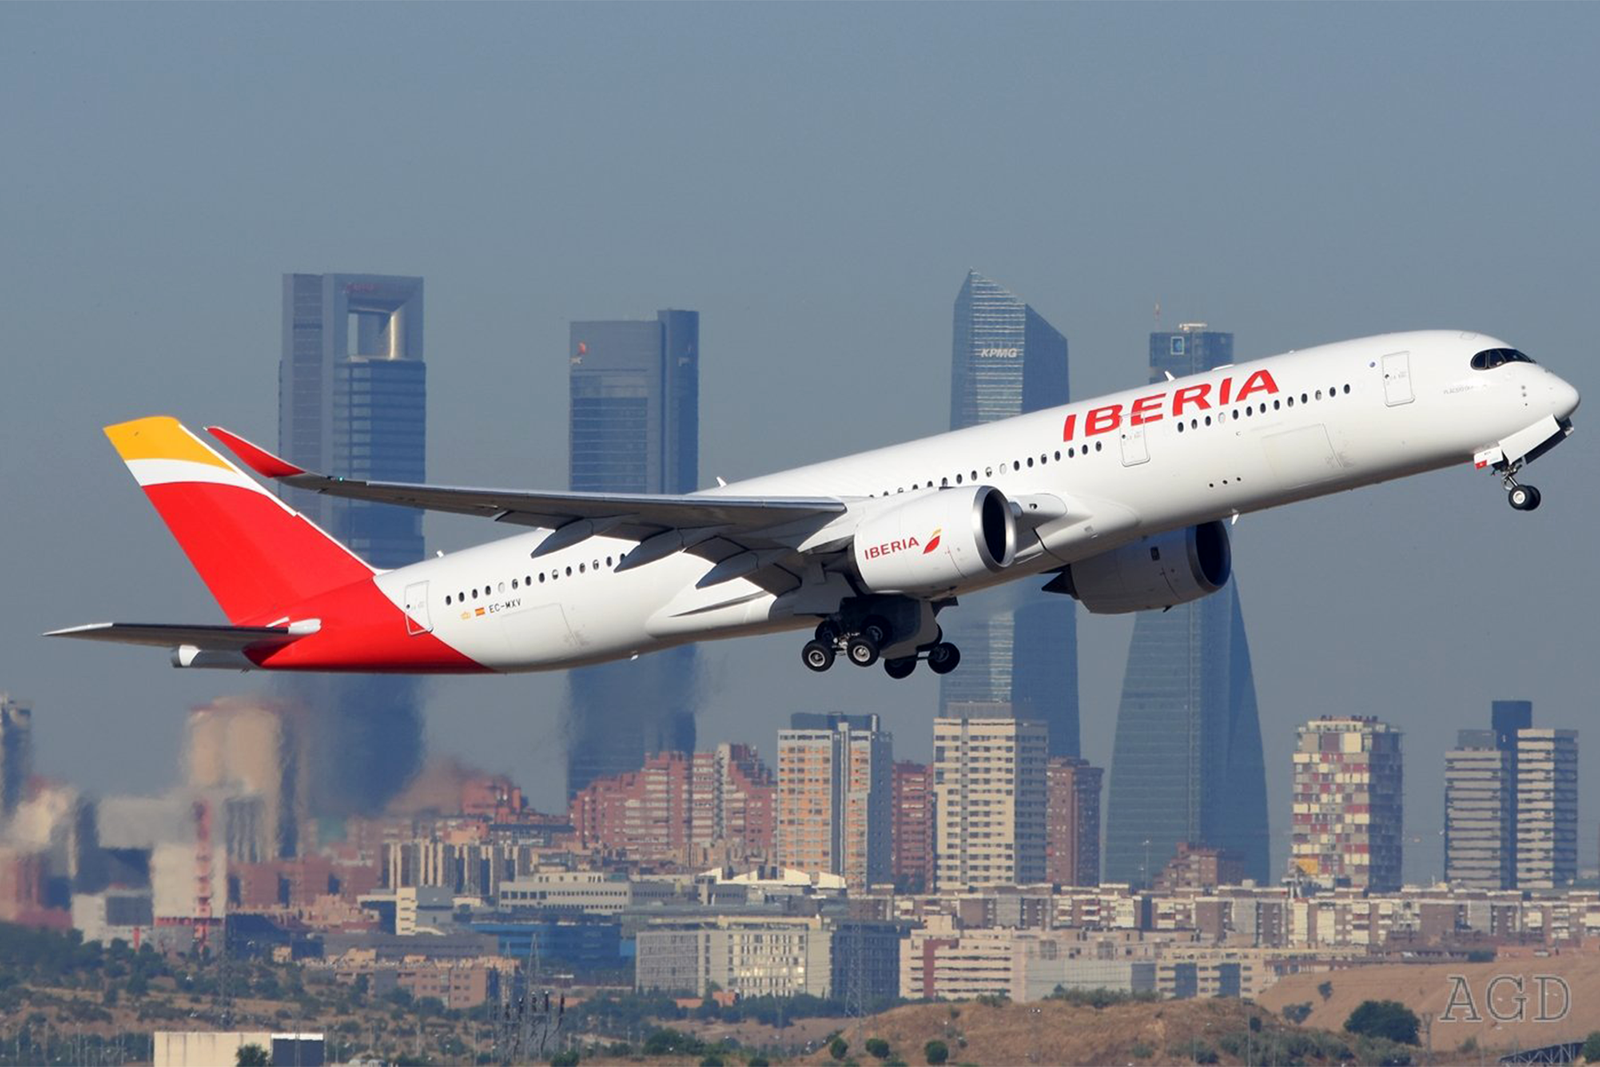 Iberia cuenta actualmente con 20 Airbus A350-900 en su flota, aunque próximamente recibirá e incorporará más unidades. Foto: Alberto González.